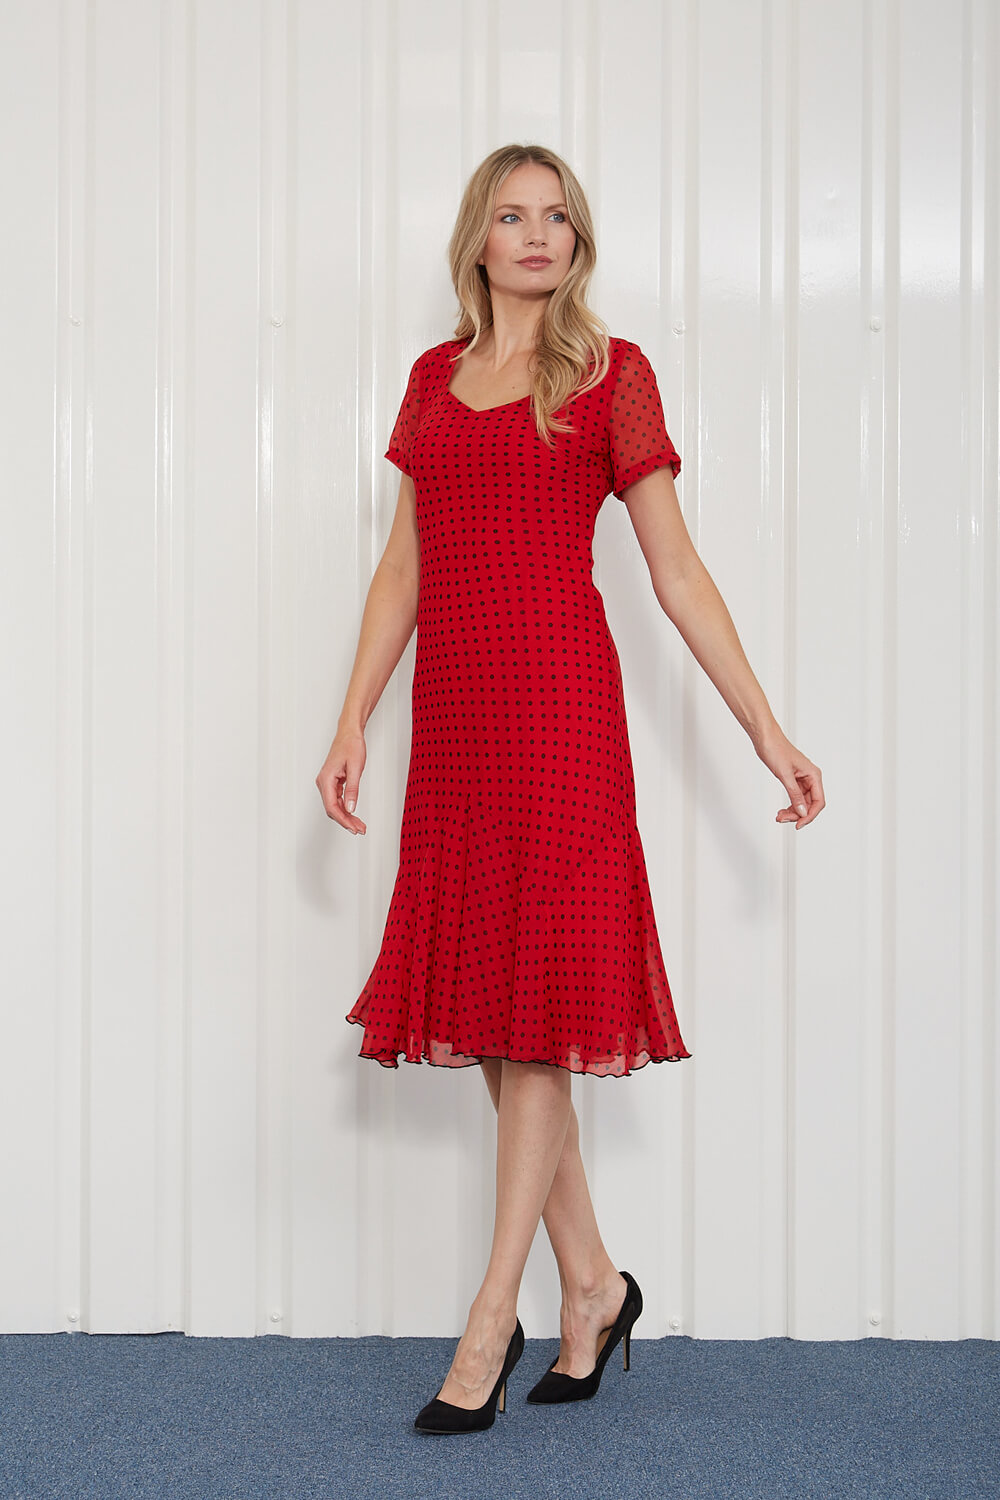 Scarlet Julianna Spot Print Chiffon Dress, Image 4 of 4